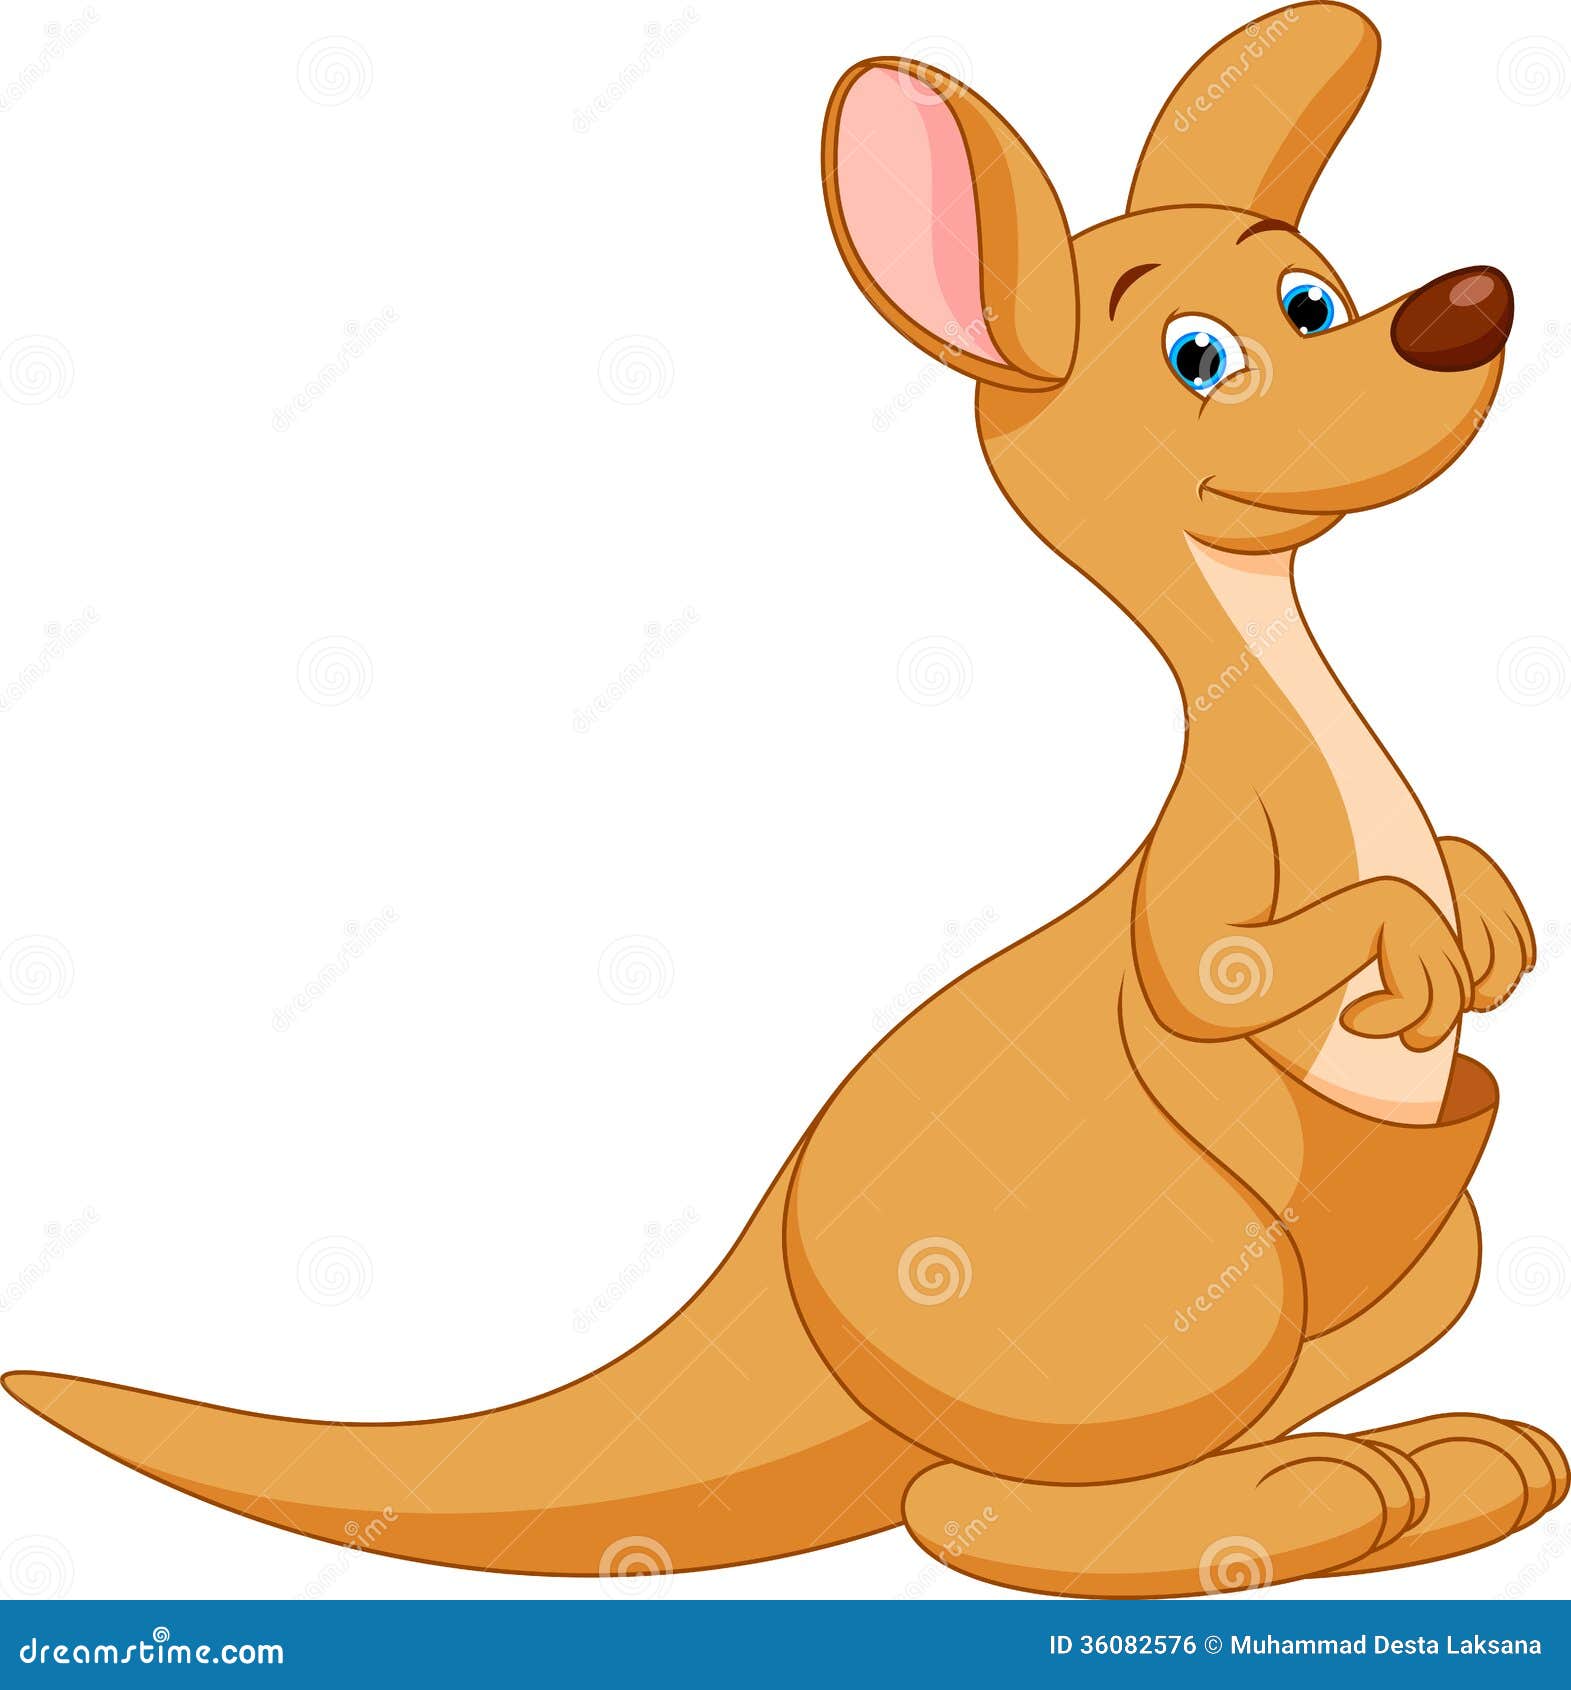 cute kangaroo clipart - photo #21